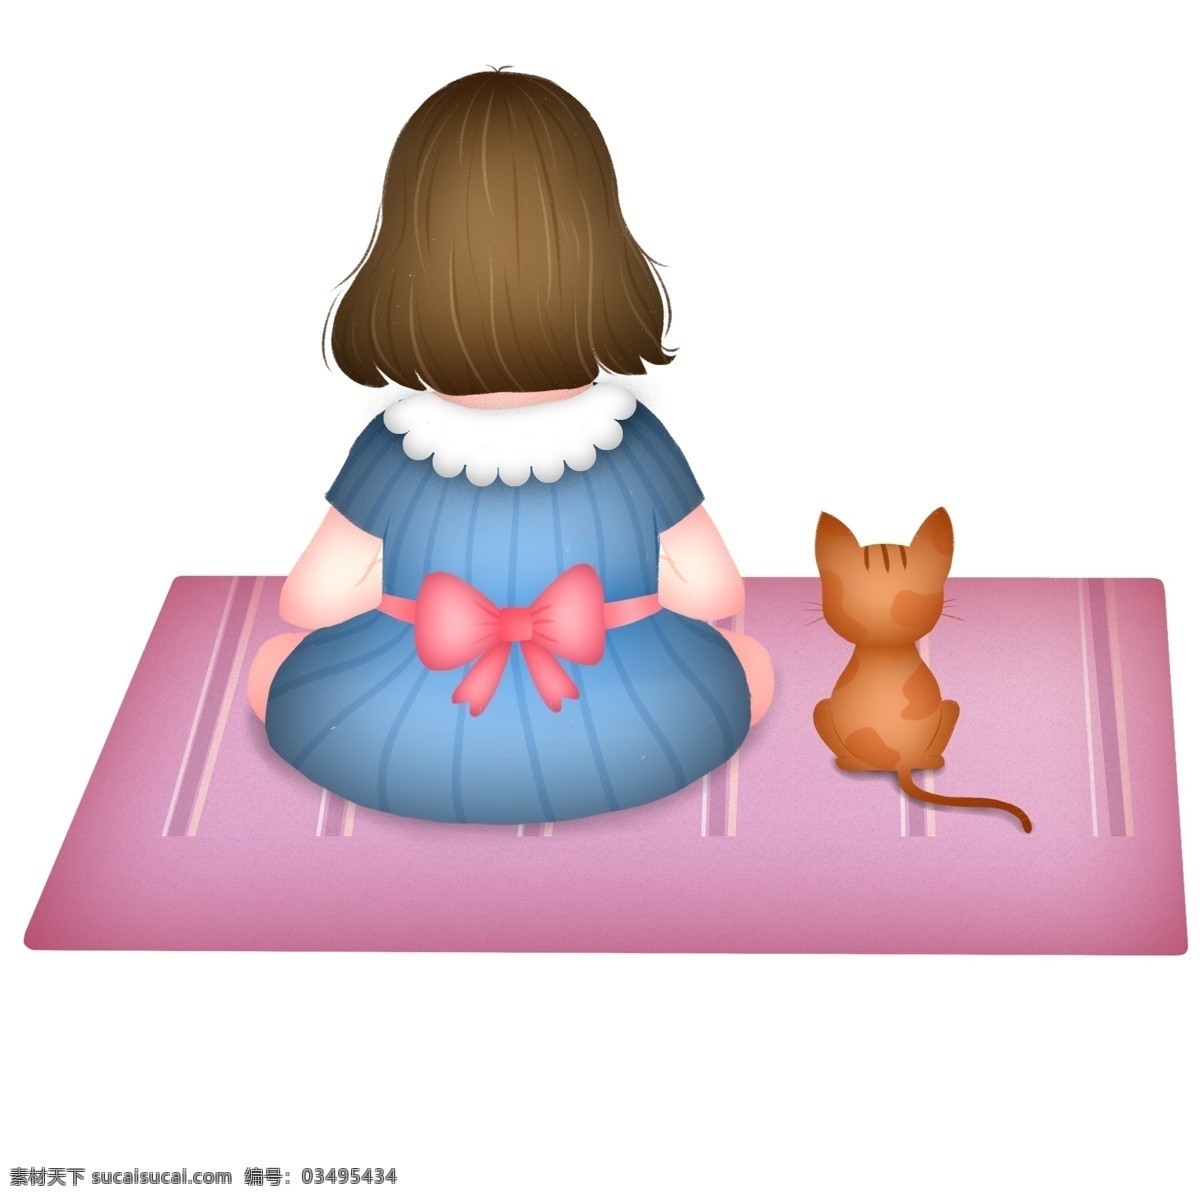 彩绘 坐在 垫子 上 女孩 猫咪 背影 小清新 插画 动物 居家 萌宠 躺在